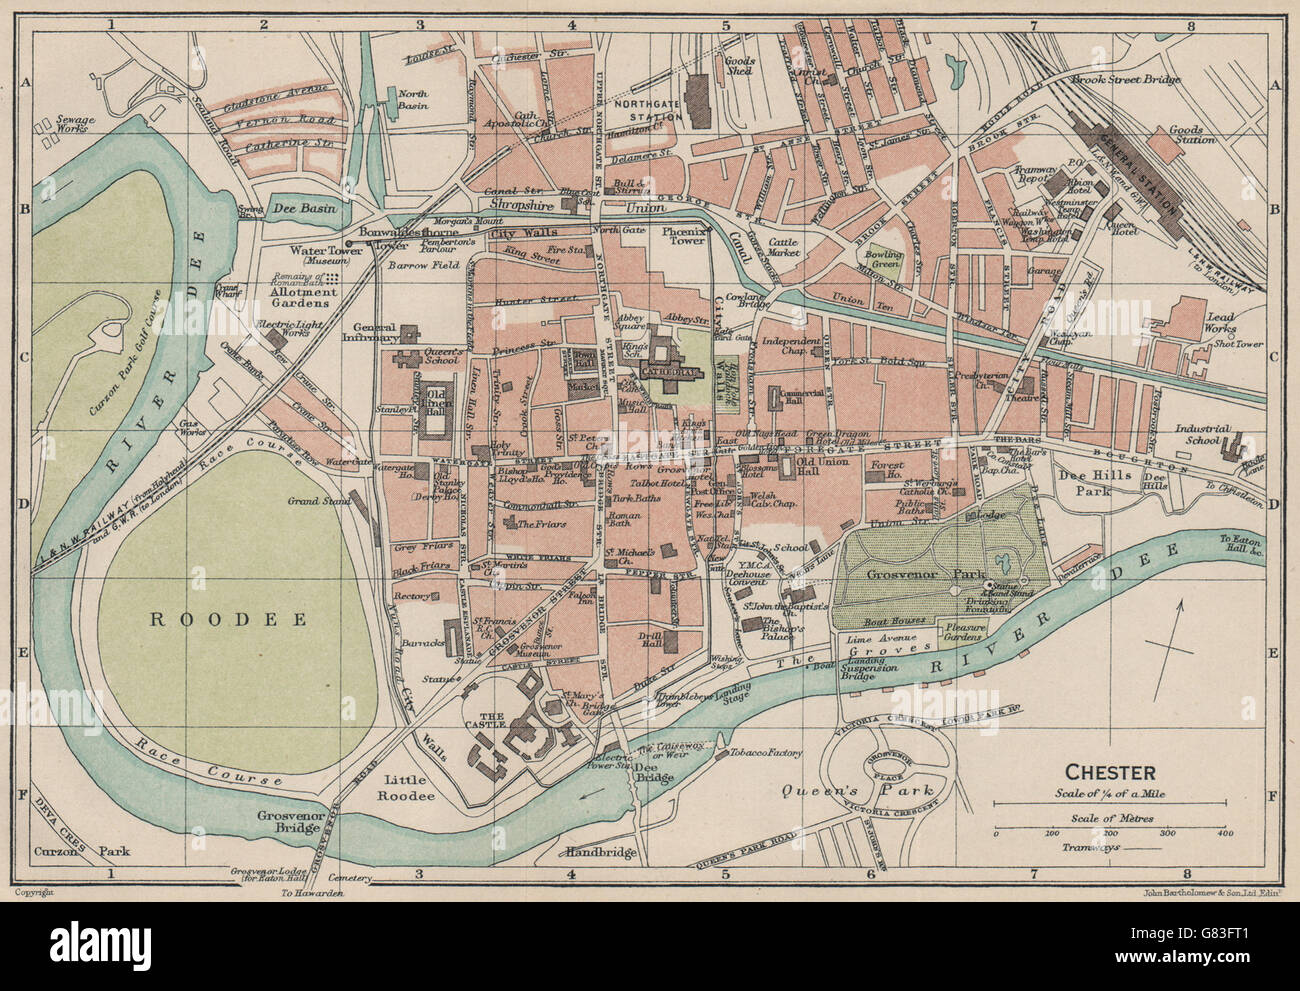 Chester Mapa De Ciudad Vintage Plan Cheshire Fotograf A De